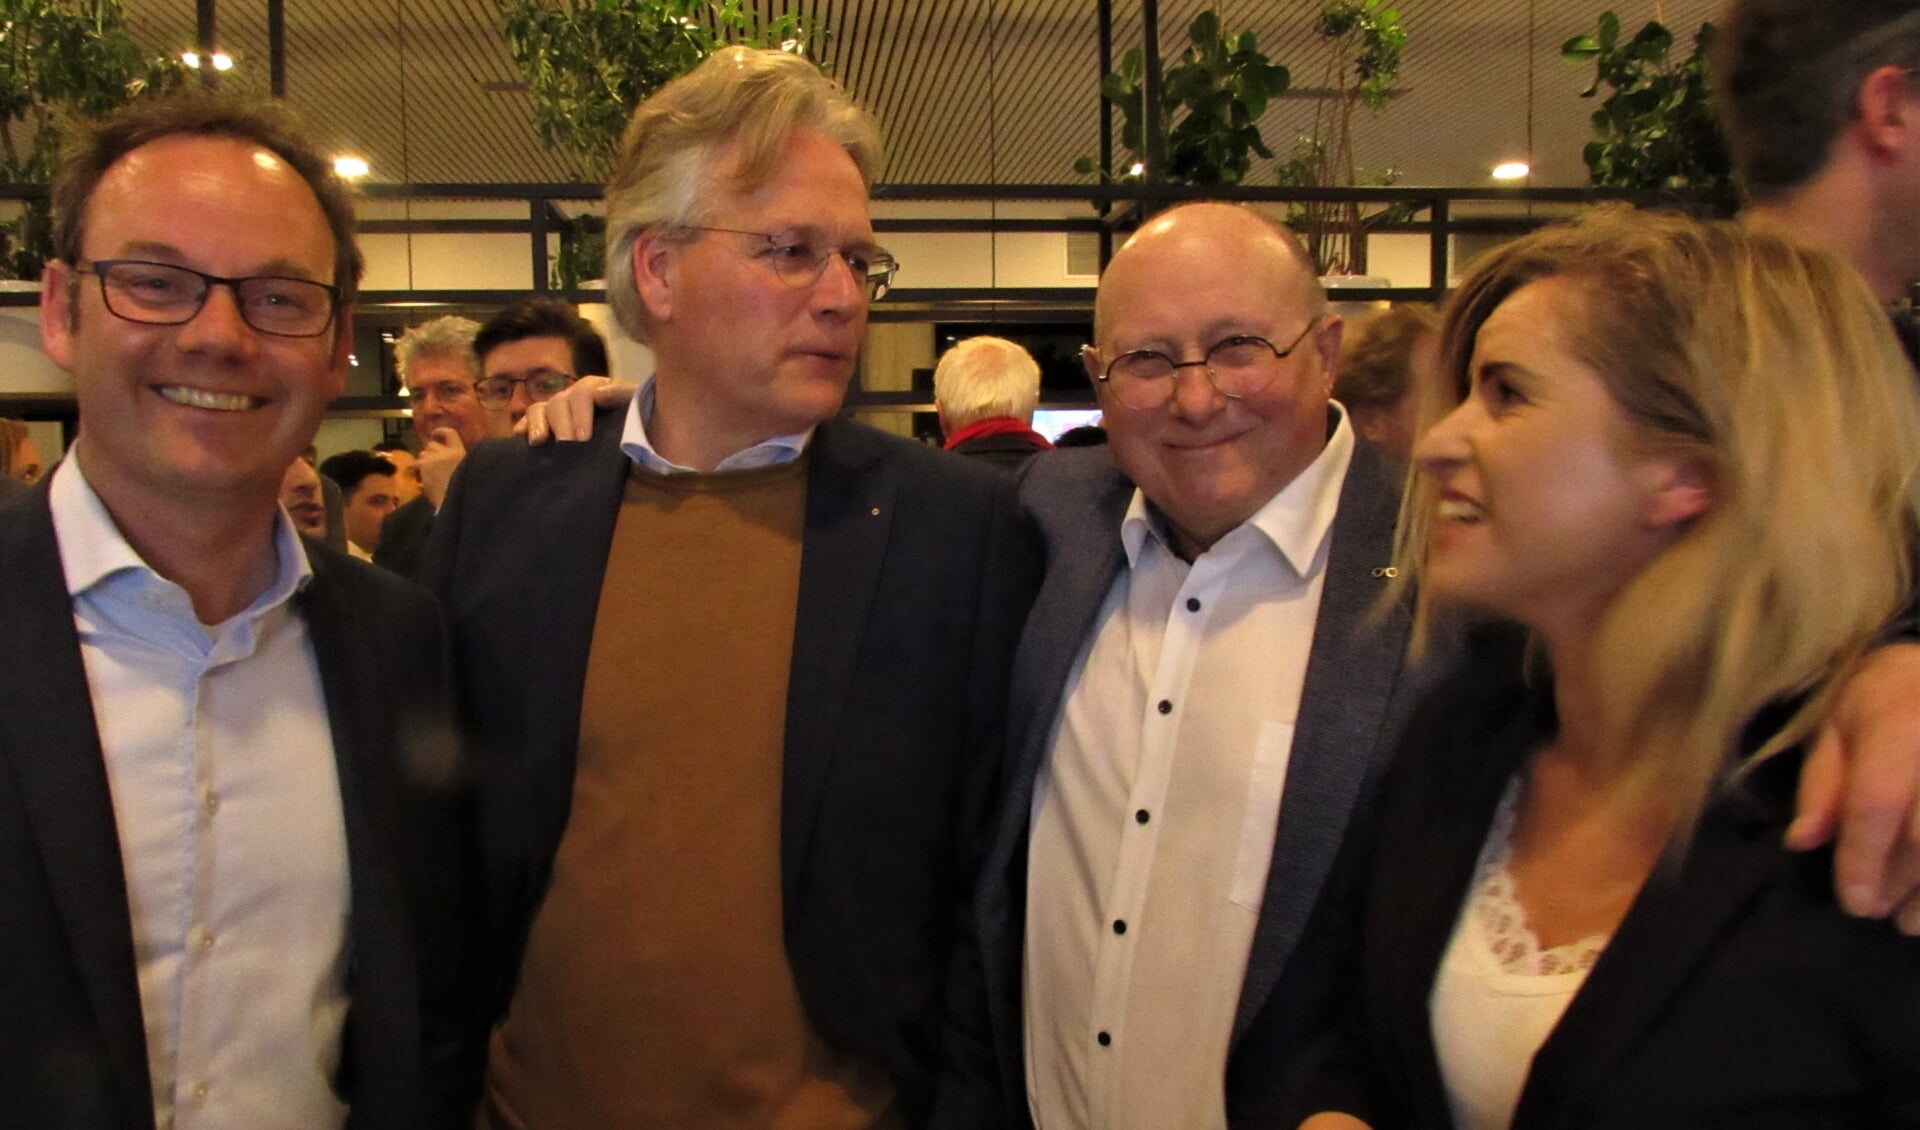 Blijde gezichten nadat burgemeester Edo Haan de voorlopige verkiezingsuitslag bekend had gemaakt bij onder andere Sjoerd Kuiper (PvdA), Dick Snoeck (VVD) en Corine Bronsveld (CDA).